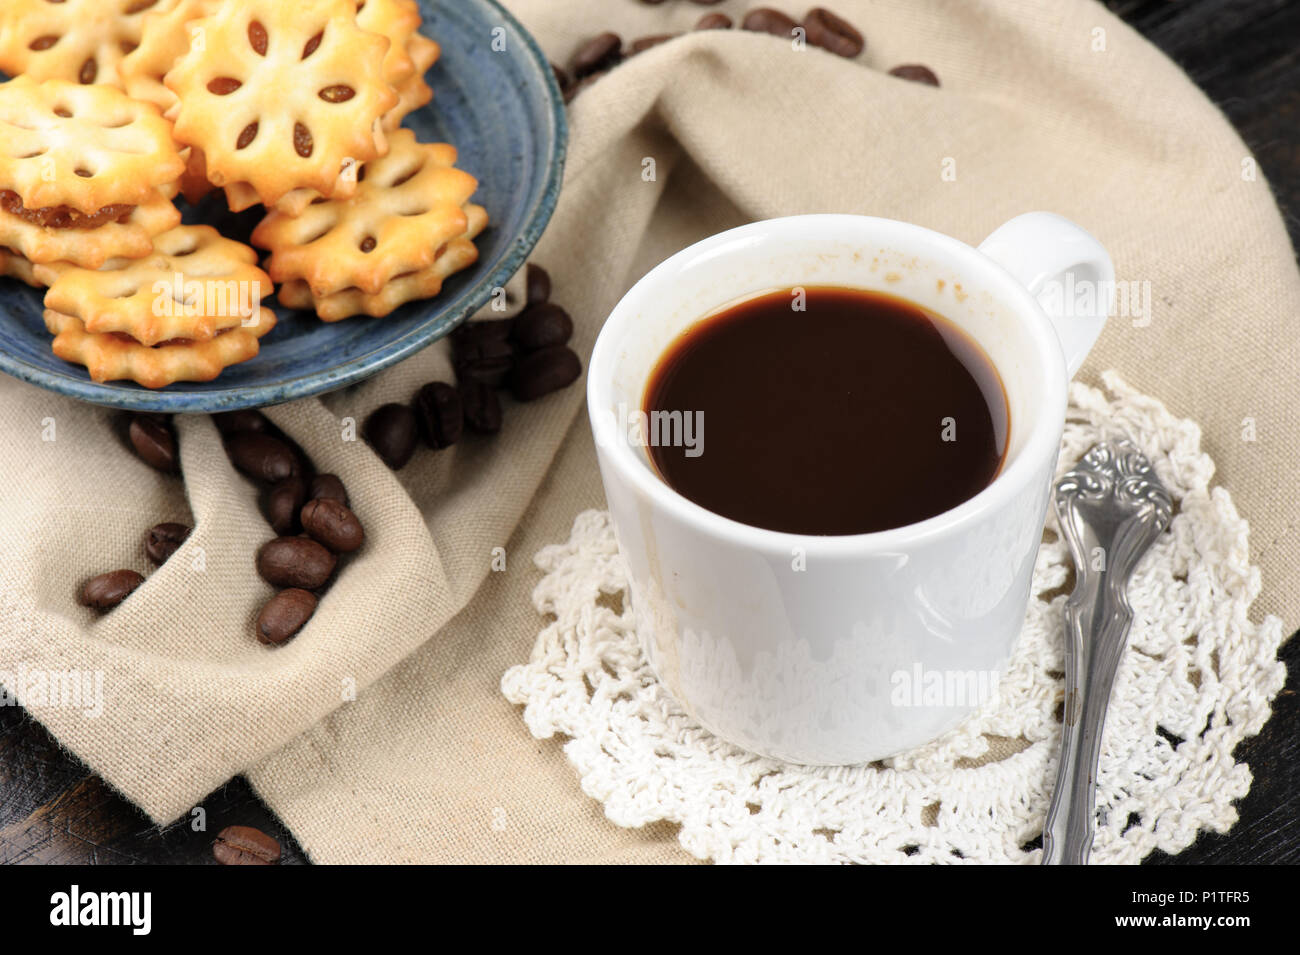 Gli amanti del caffe' concetto, una tazza di caffè Foto Stock